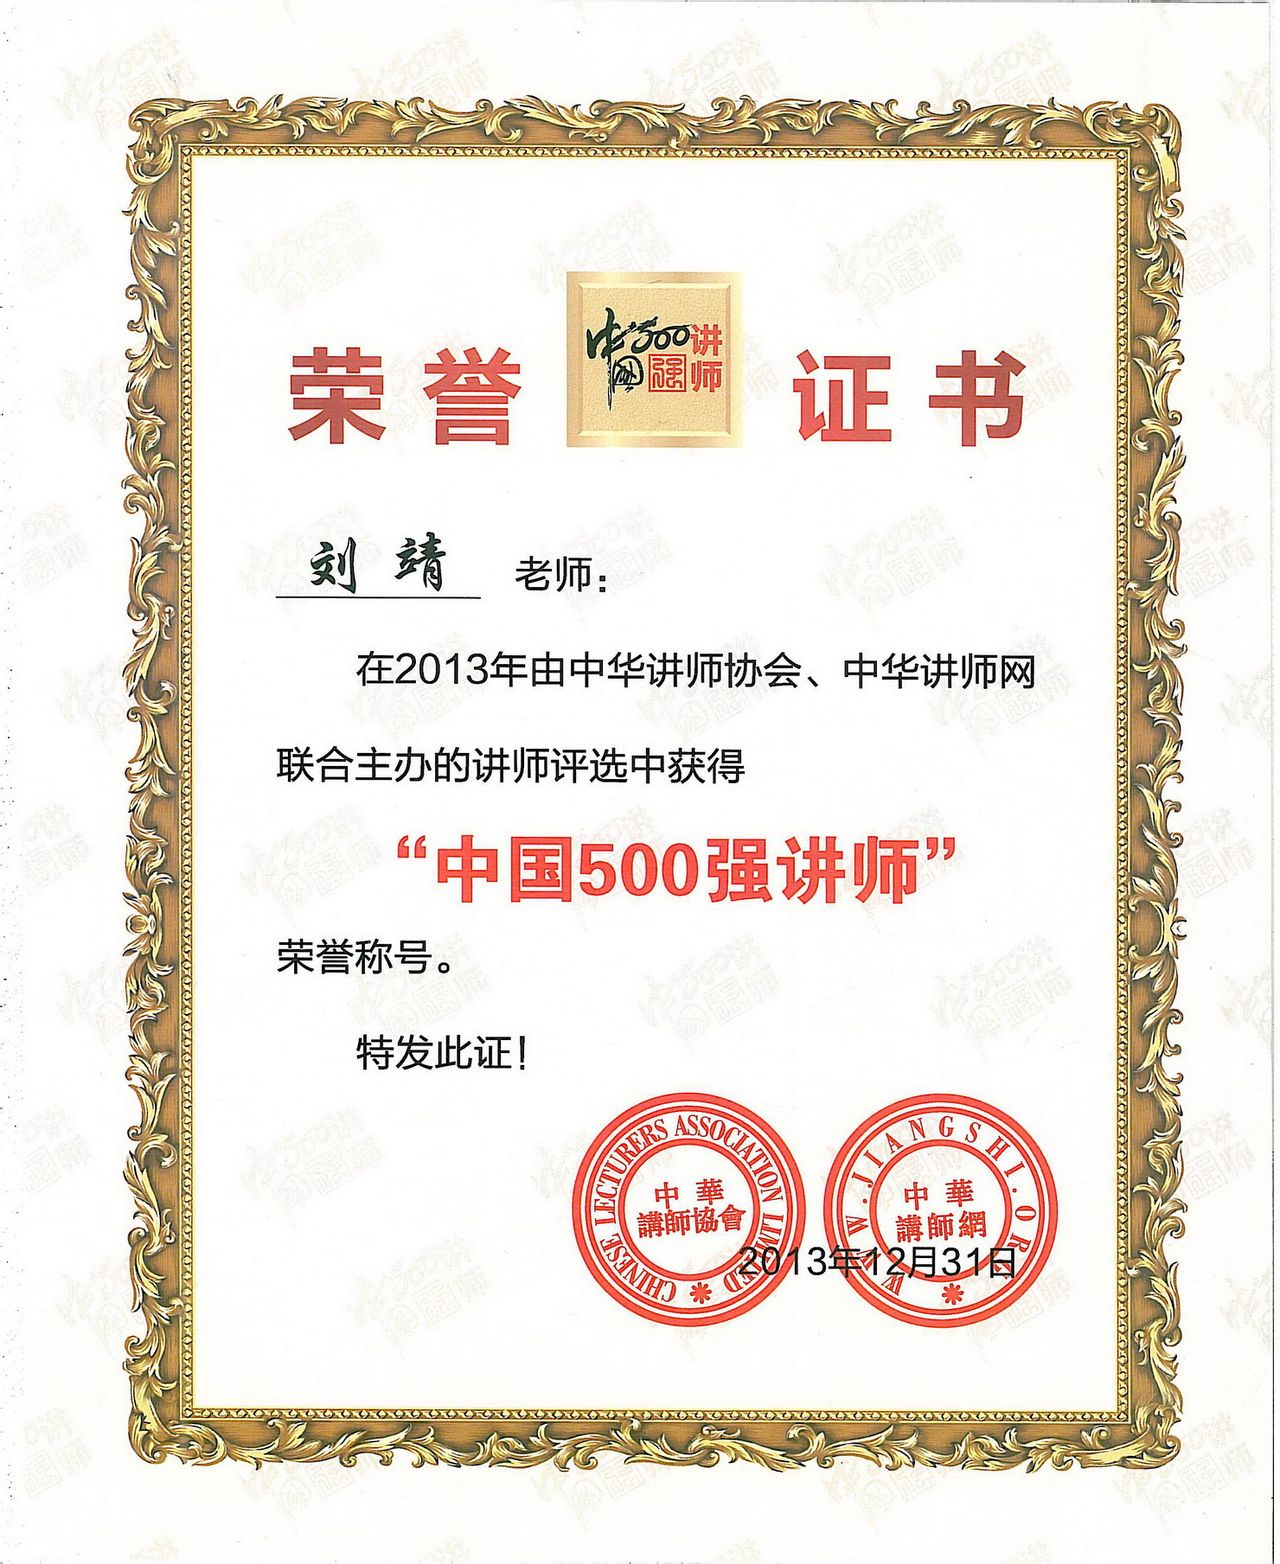 劉靖教授獲得中國500強講師證書